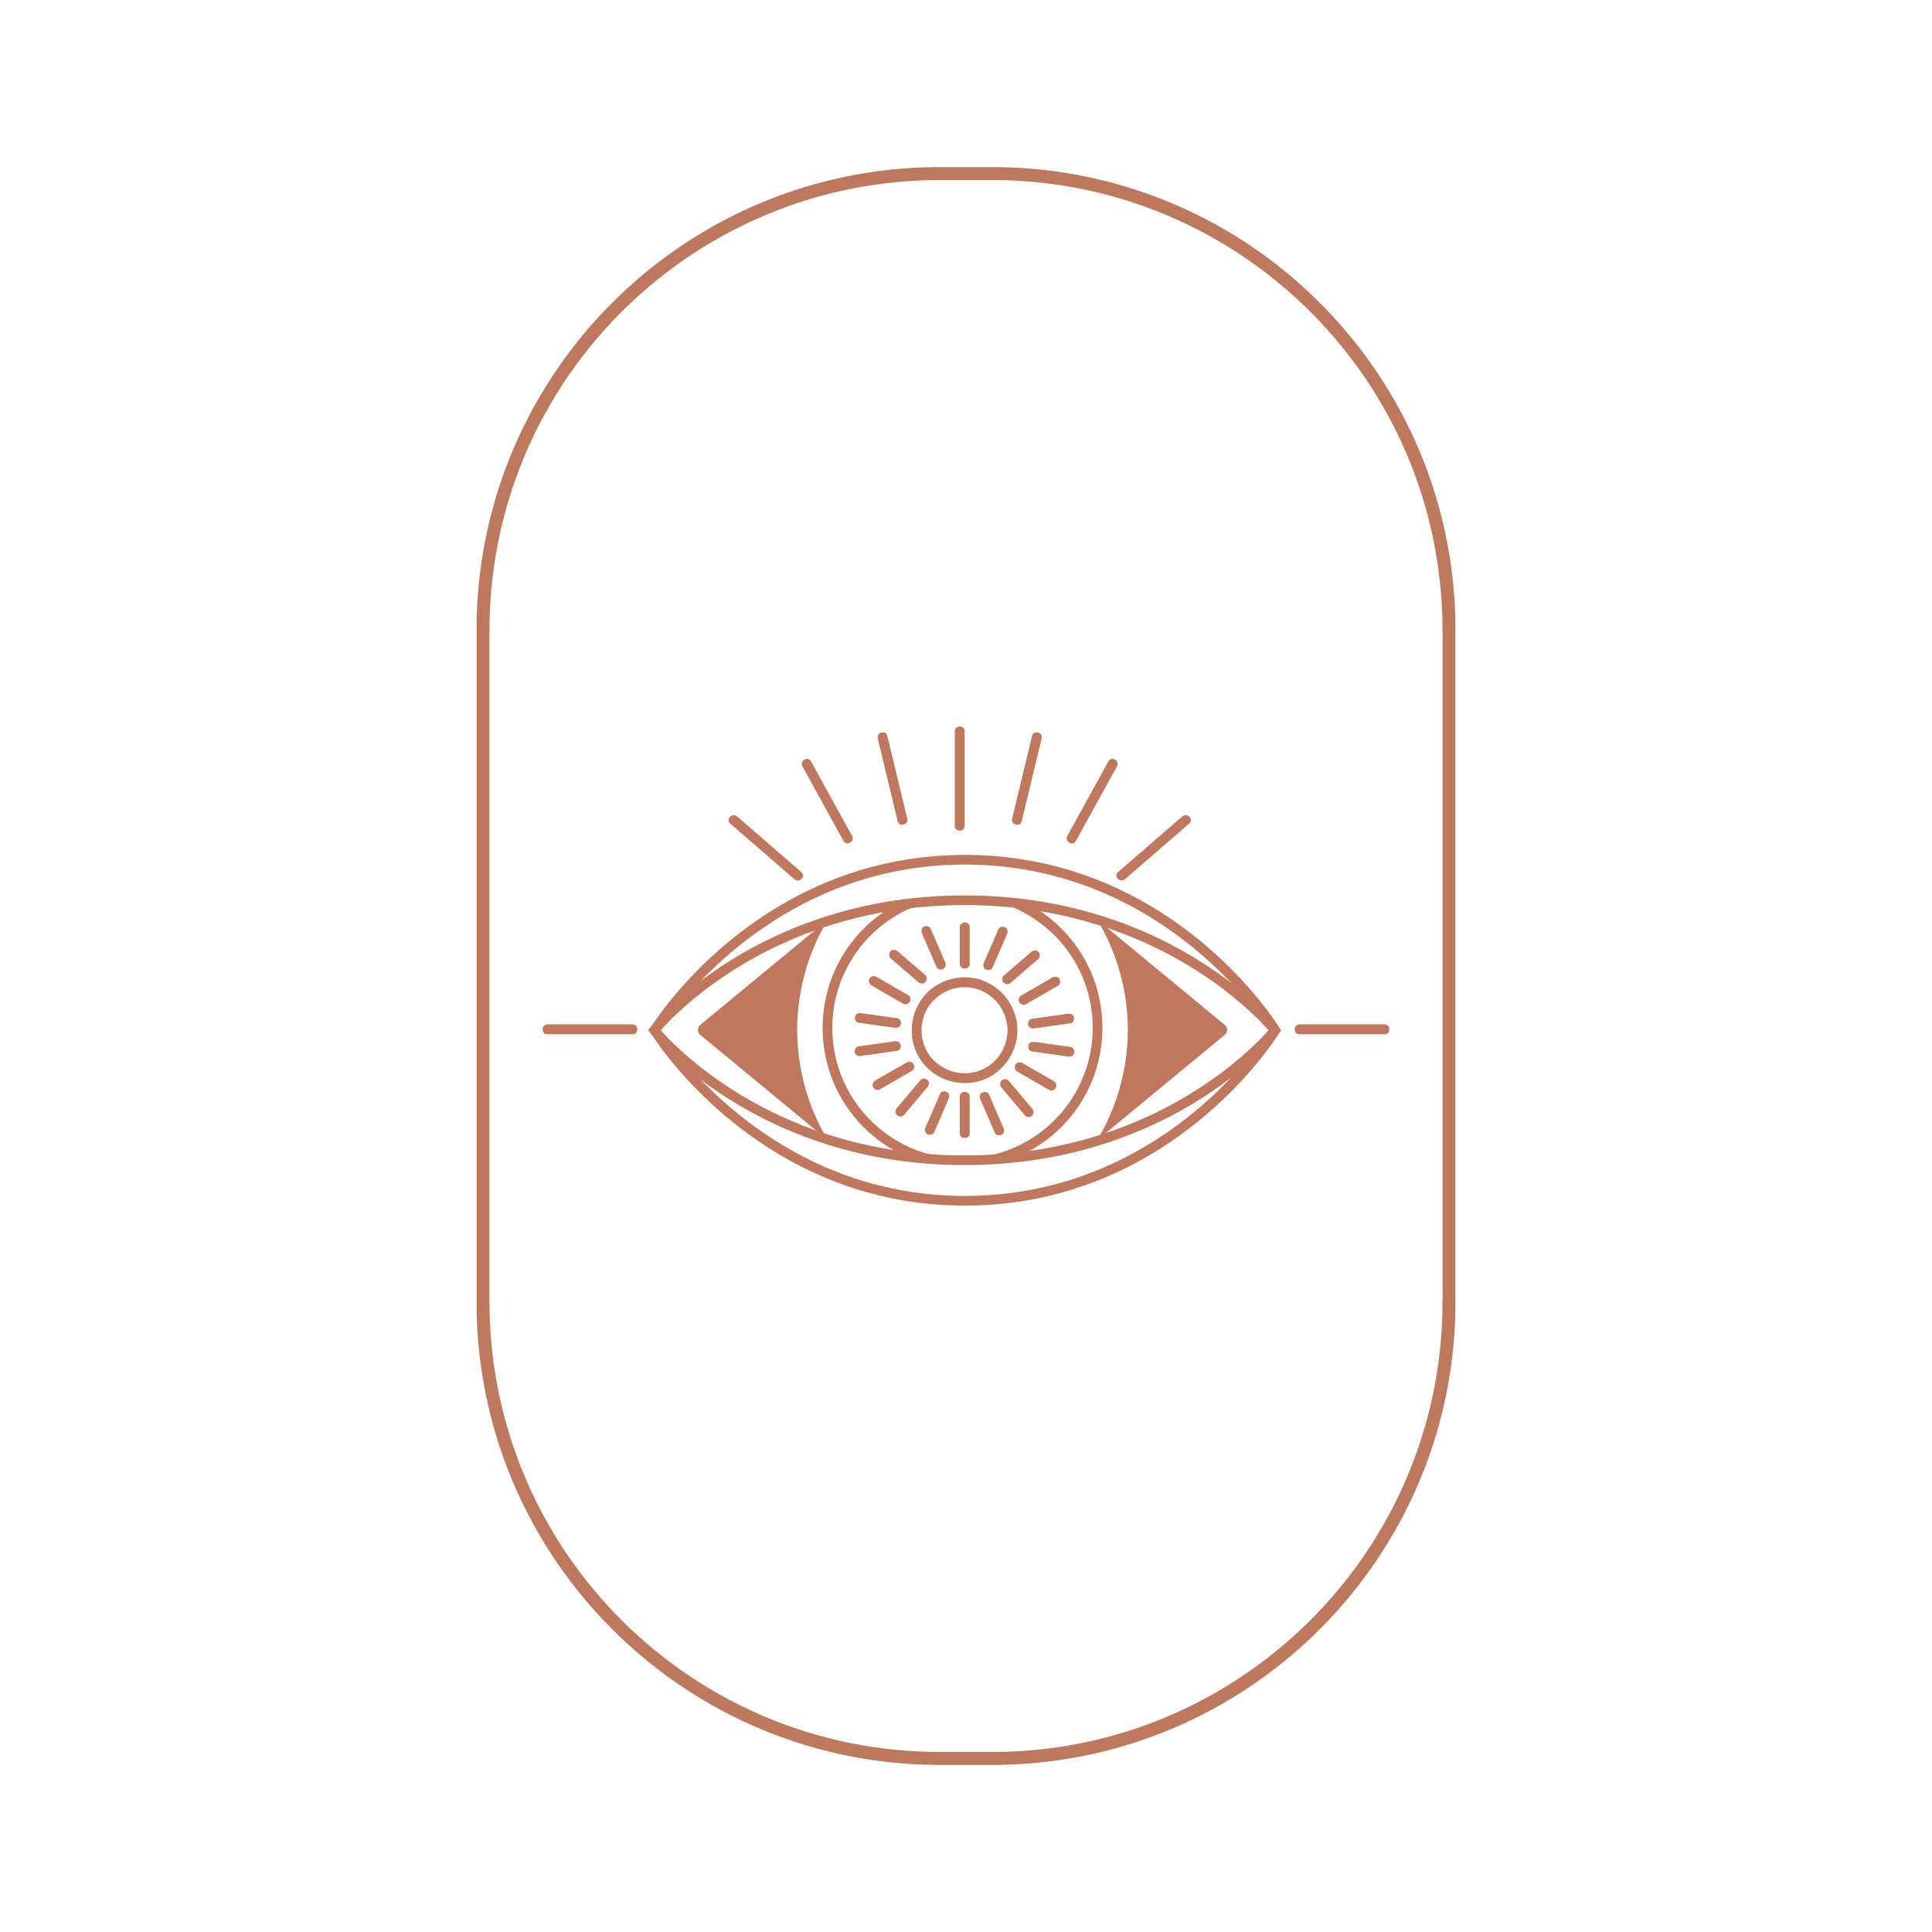 Le symbole du mauvais oeil est un symbole de la culture turquoise qui sert à dégager le mauvais oeil envoyé par les envieux